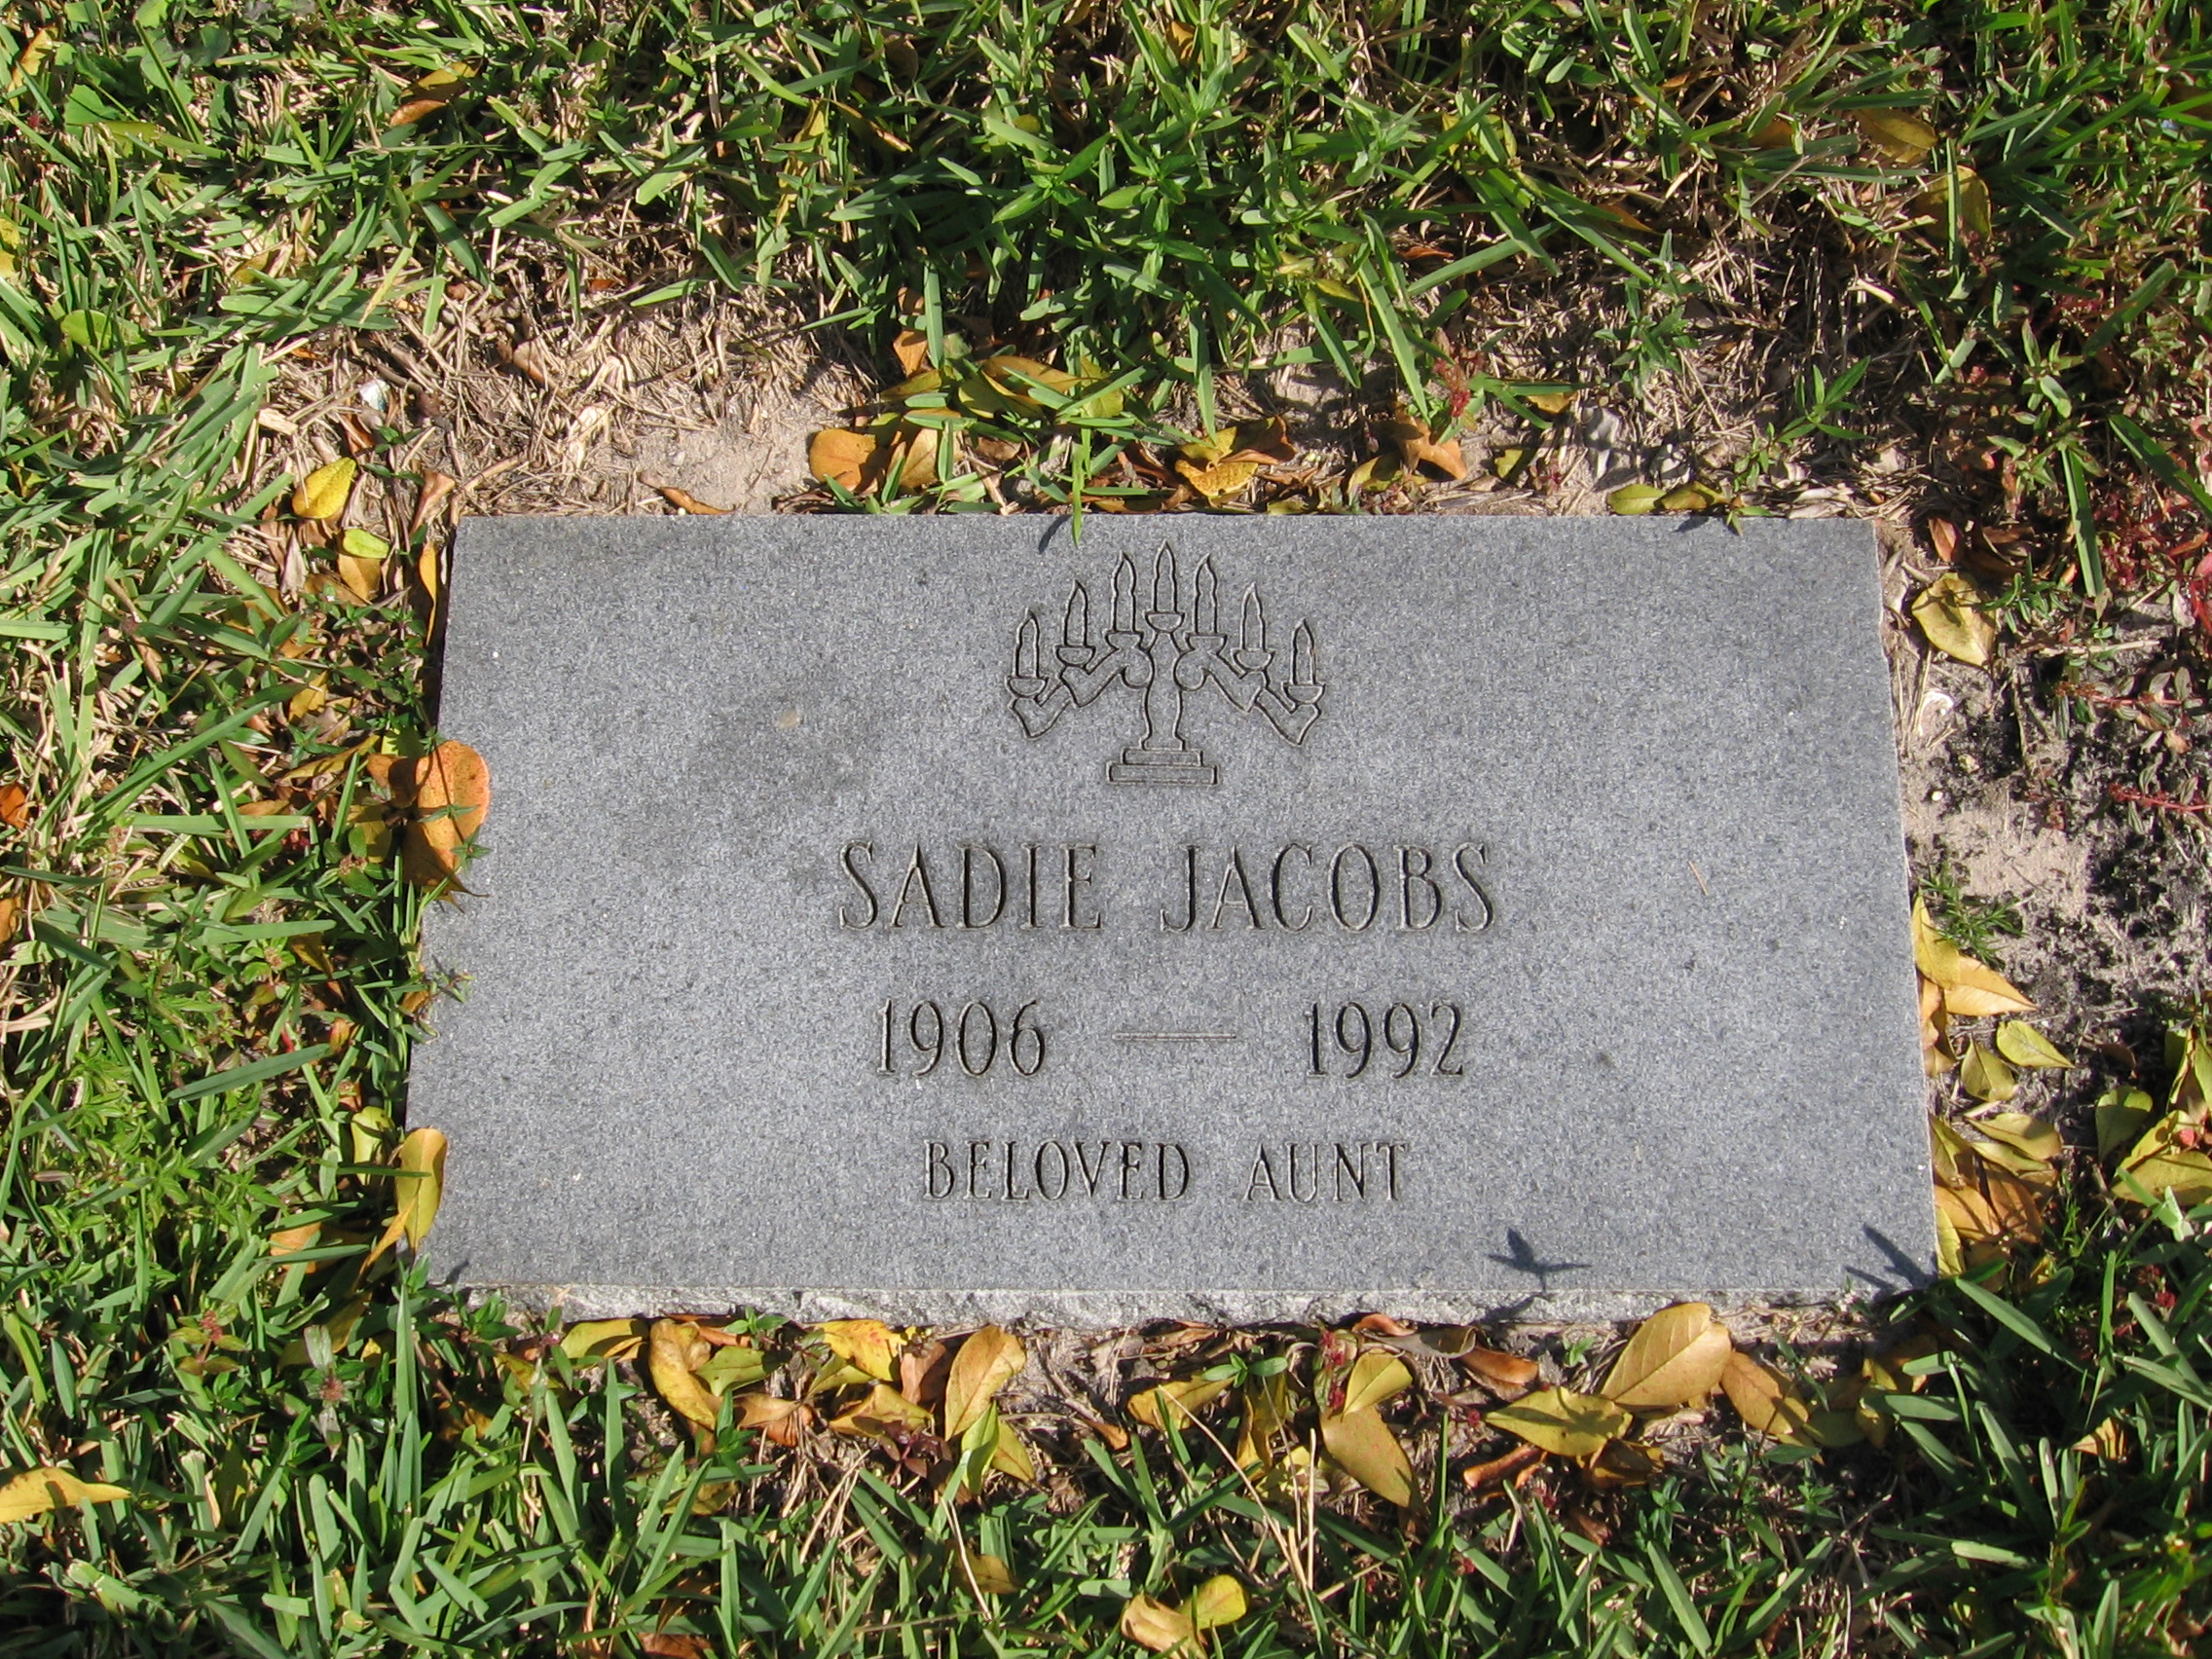 Sadie Jacobs